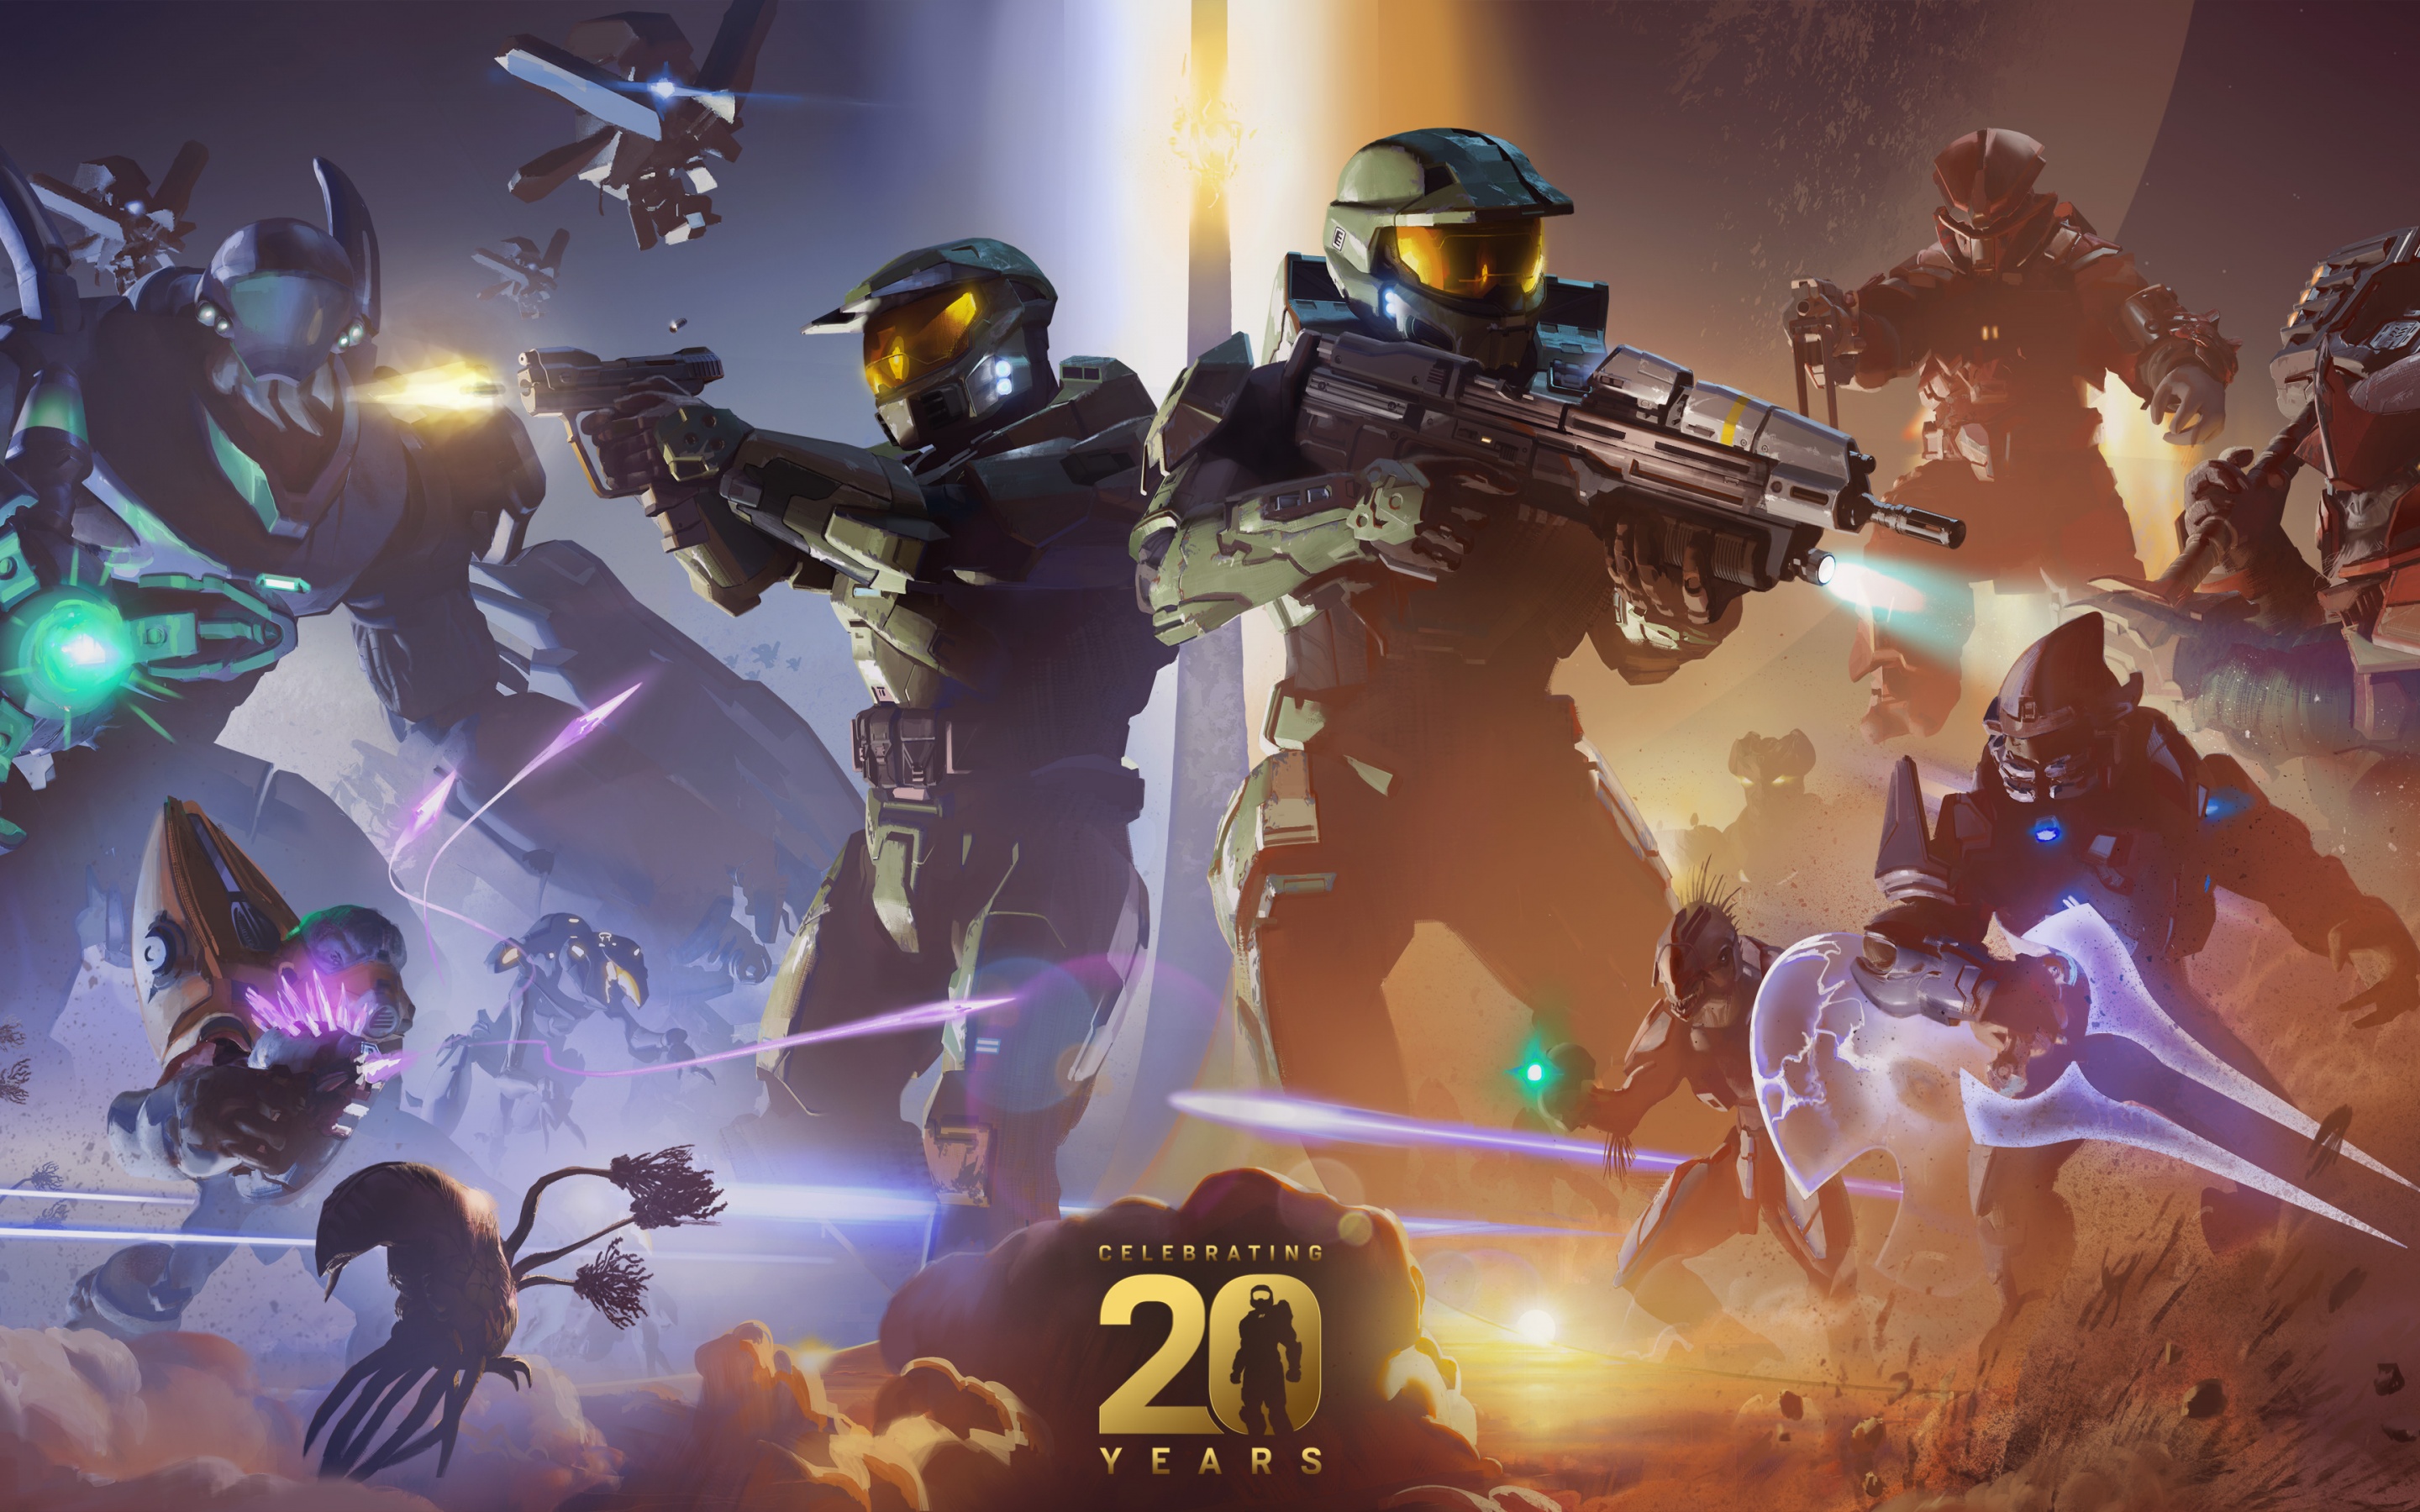 Halo, Xbox, kỷ niệm 20 năm, trò chơi, hình nền 4K - những từ khóa đầy hứa hẹn. Những hình ảnh liên quan đến chủ đề này sẽ khiến bạn trở nên phấn khích và muốn khám phá thêm về thế giới game của Xbox.